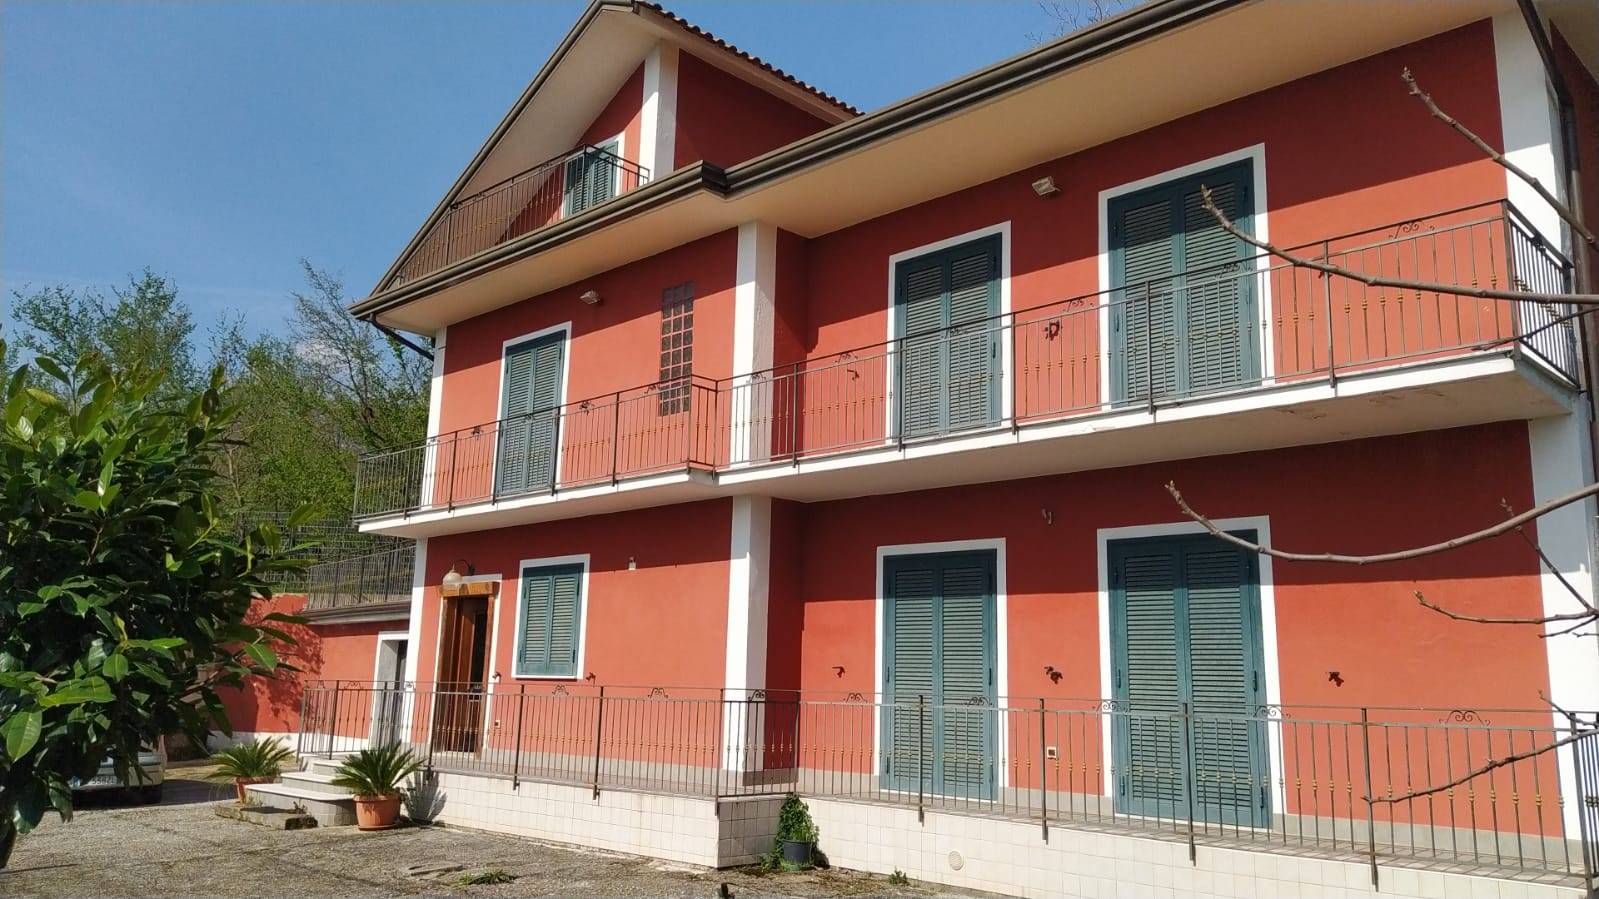 Villa in vendita a Capriglia Irpina, 5 locali, prezzo € 238.000 | PortaleAgenzieImmobiliari.it